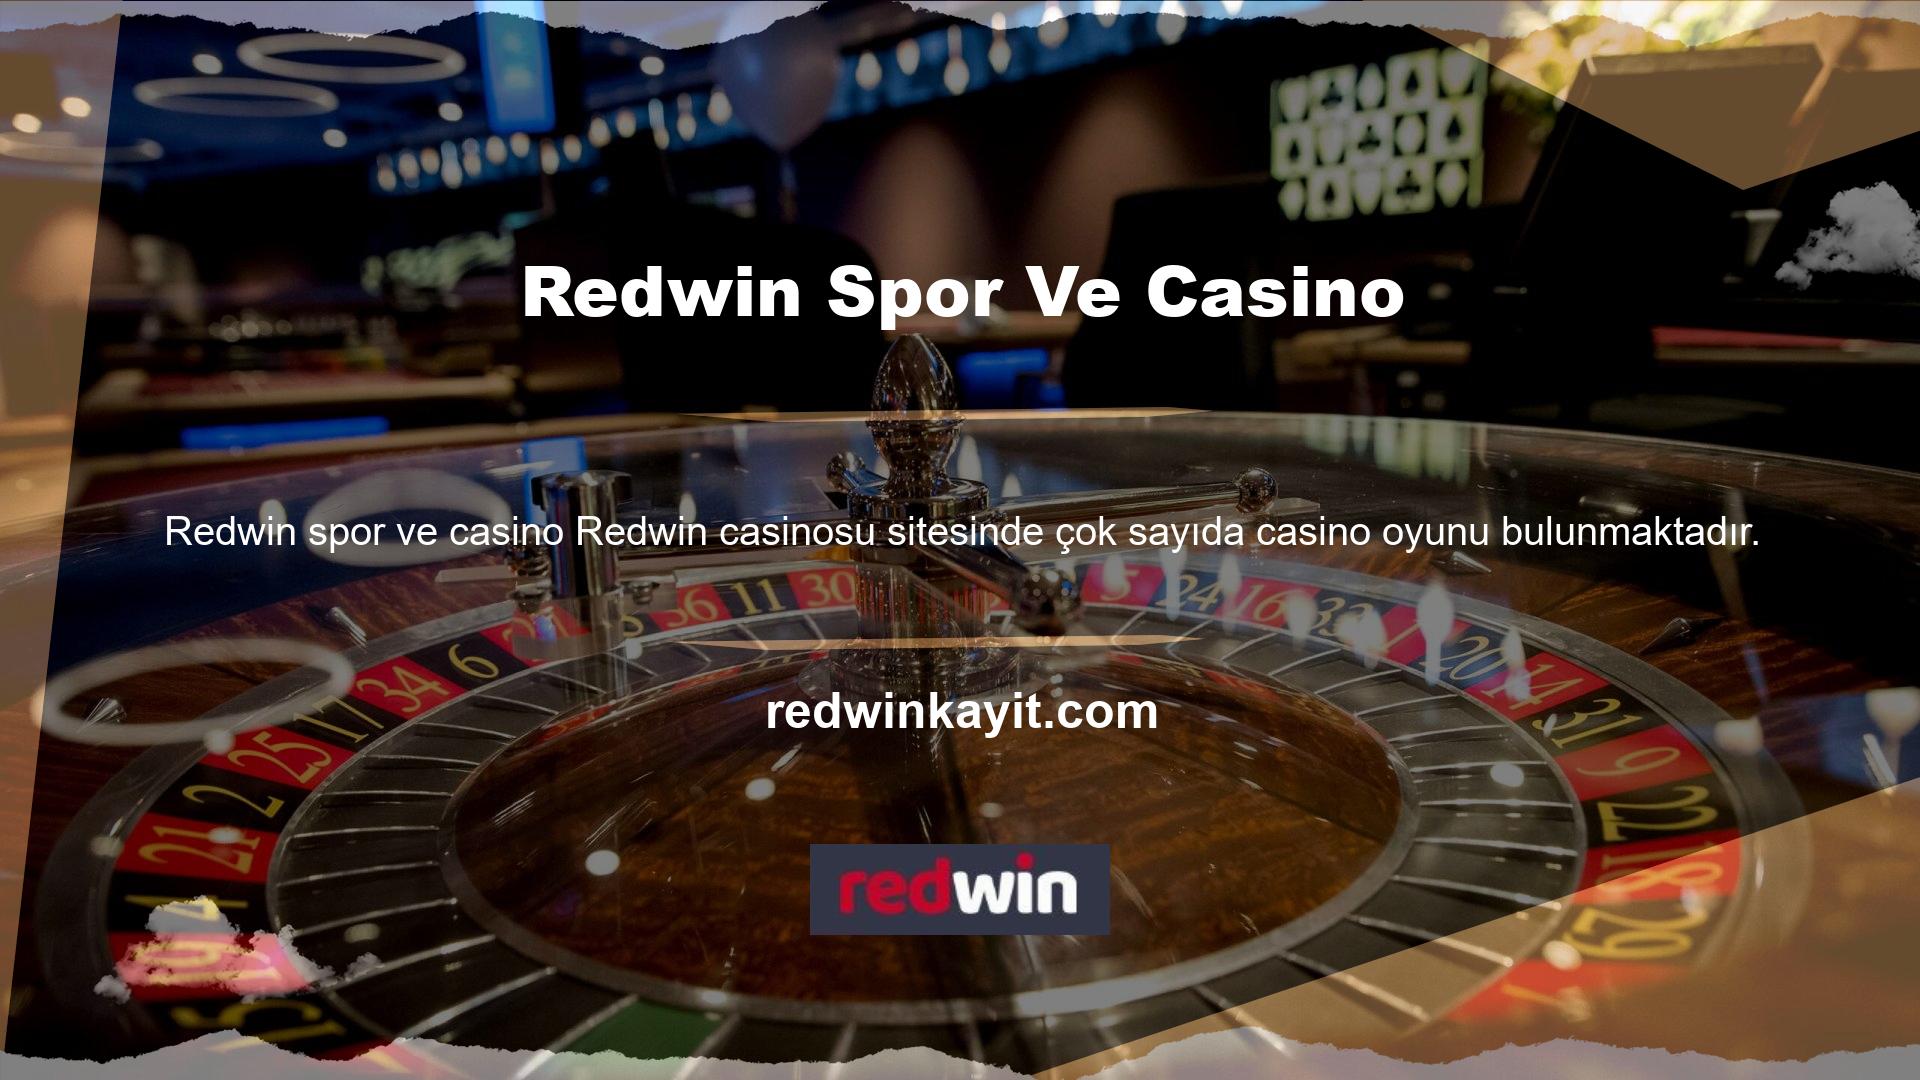 Neden? Redwin casino web sitesini ve diğer casino web sitelerini ziyaret edenler casino, canlı bakara veya diğer oyunlara katılabilir